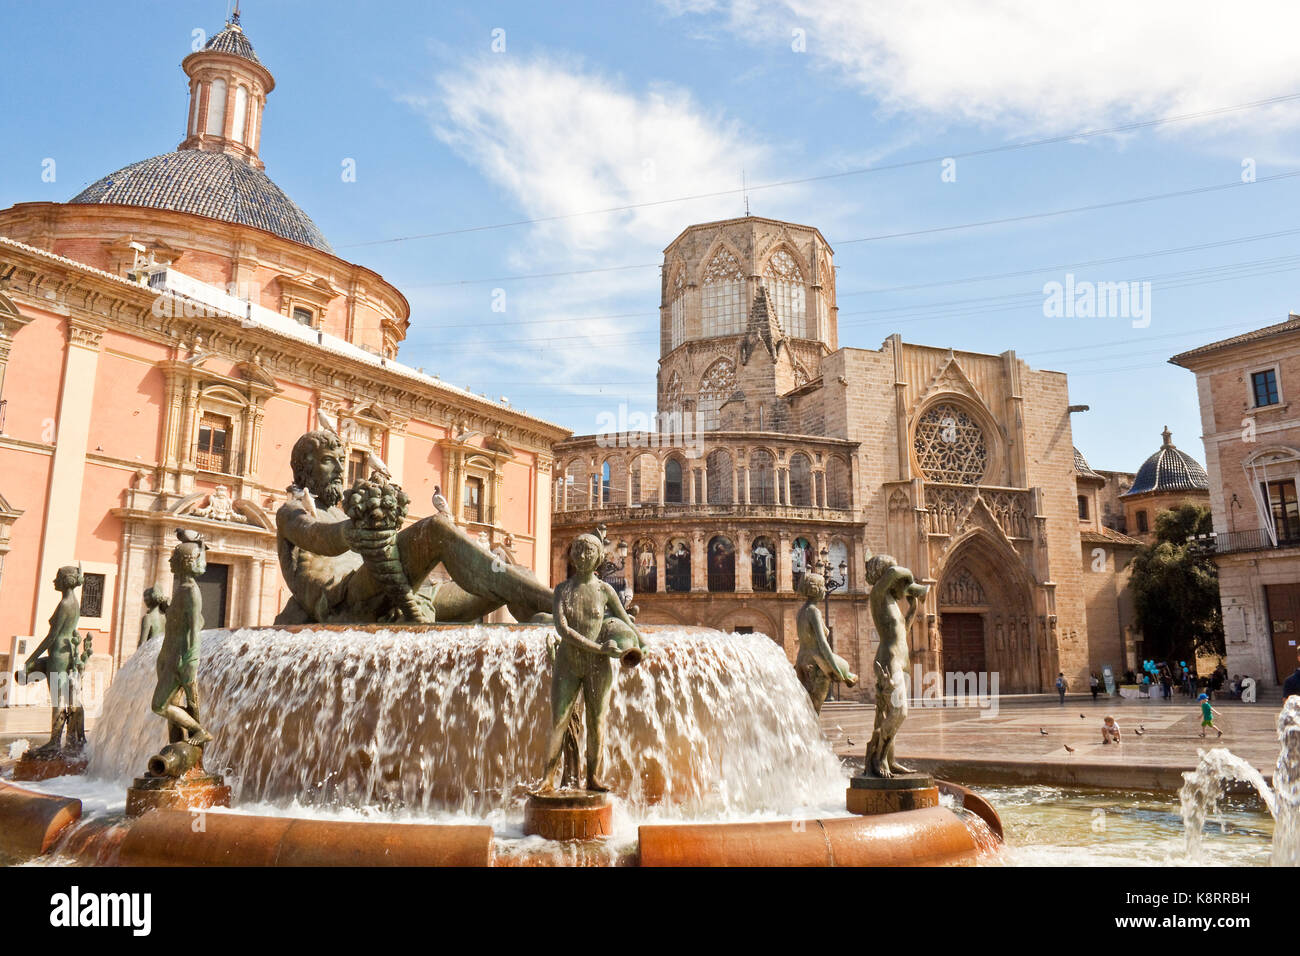 Valence, le 10 avril 2013 - Virgin : place avec fontaine turia, basilique notre dame de l'abandonné et apôtres porte de la Cathédrale de Valencia. Banque D'Images